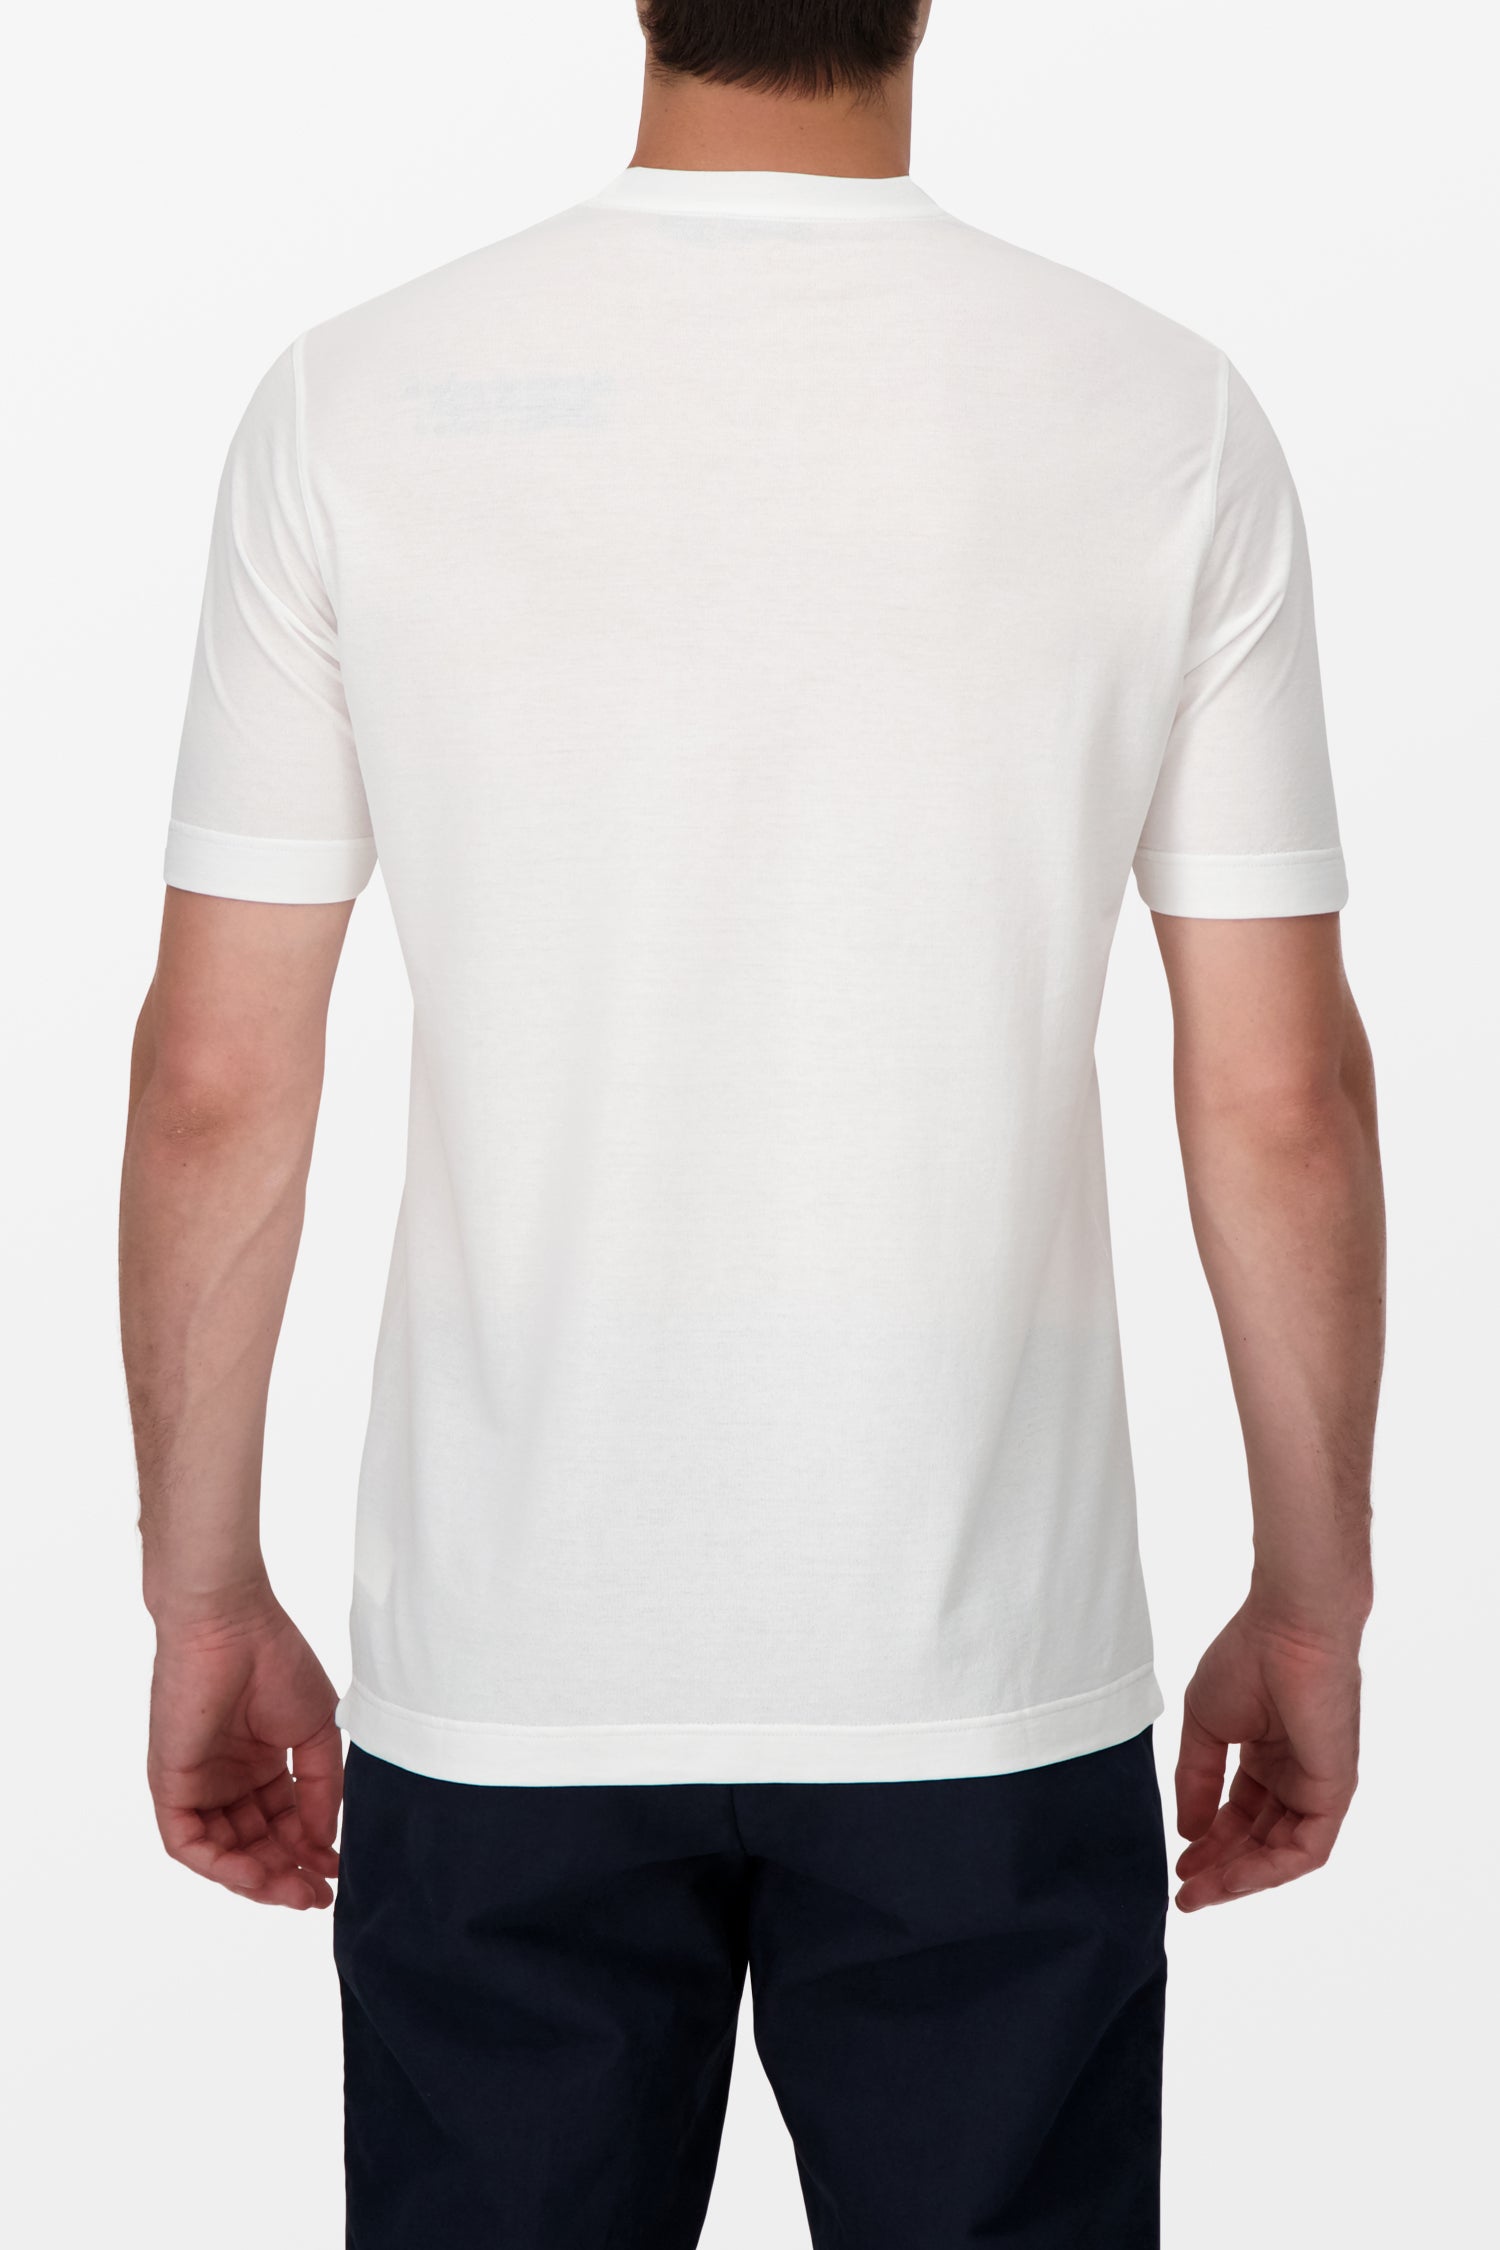 Zanone White T-Shirt